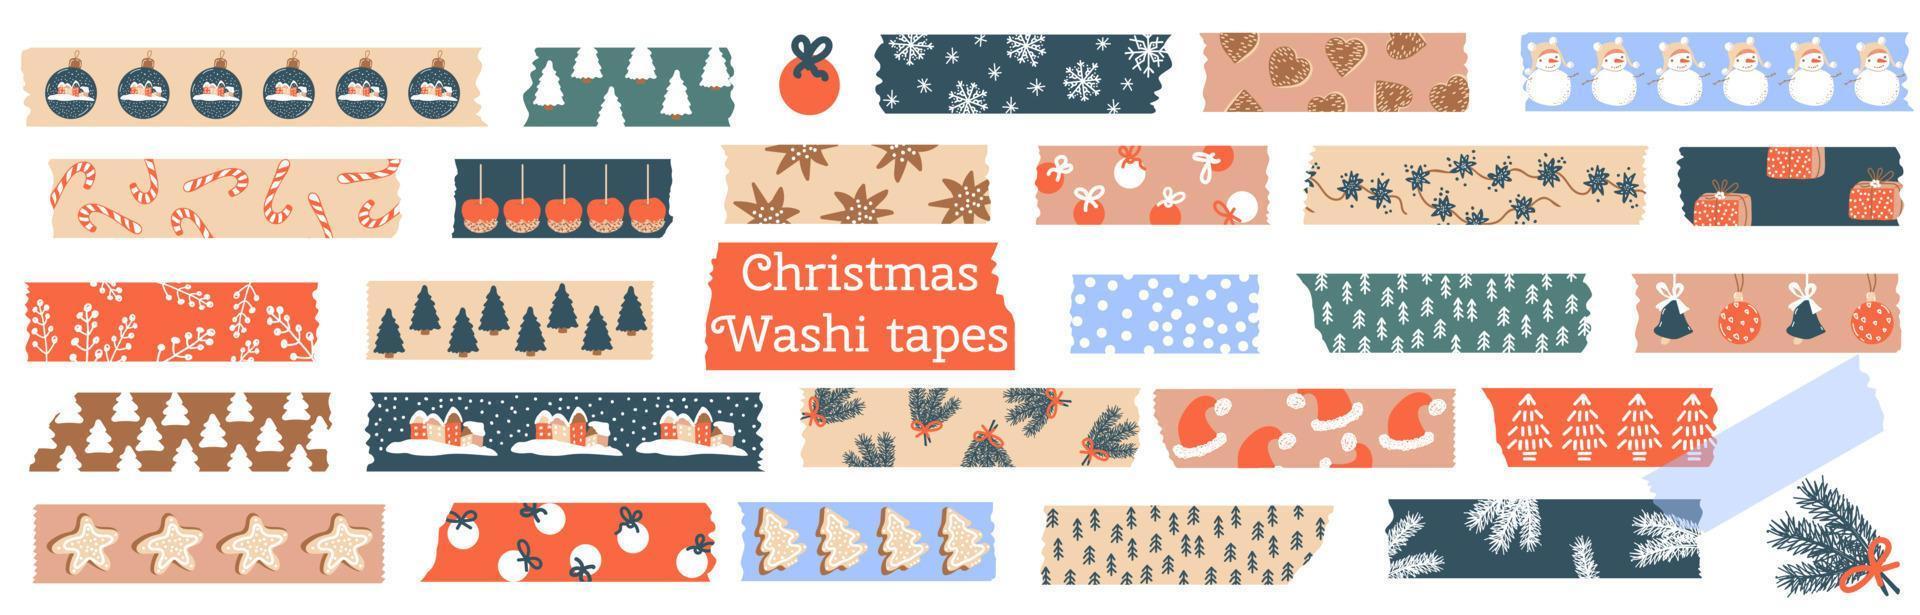 weihnachtliche Washi-Tapes. set mit schneeflocken, lebkuchen, fichte, winterelementen. Abdeckband oder Klebestreifen für Rahmen, Scrapbooking, Bordüren, Webgrafiken, Bastelarbeiten, Aufkleber. Vektor